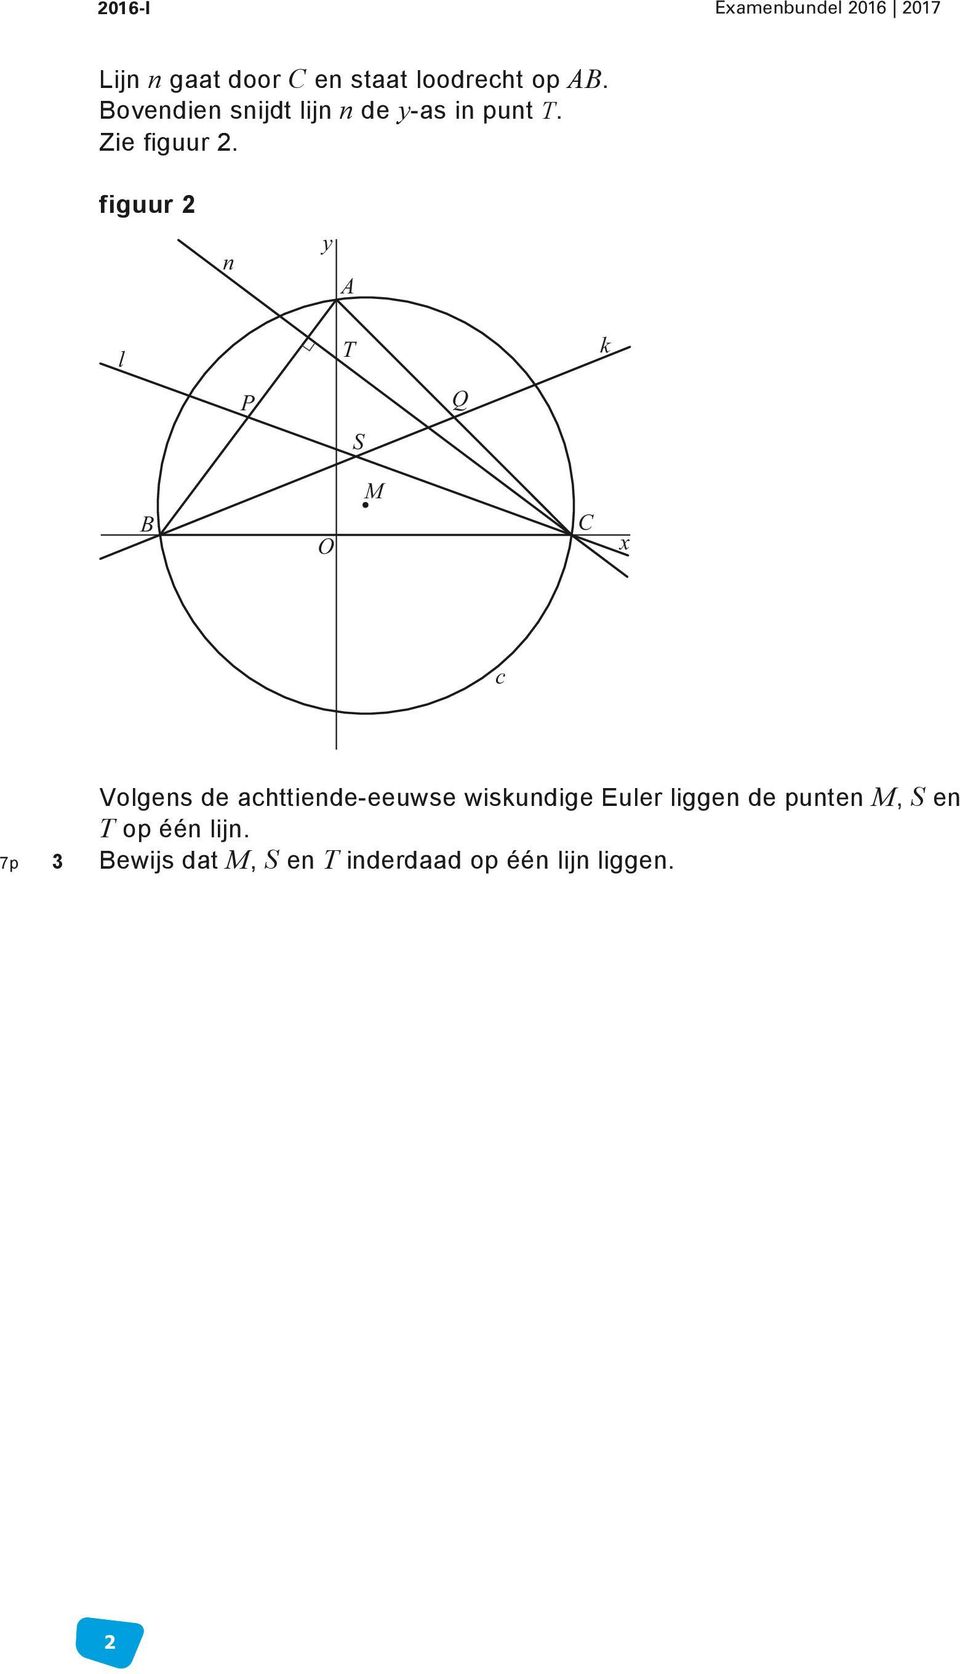 figuur 2 n A l T k P Q S B M C c Volgens de achttiende-eeuwse wiskundige Euler liggen